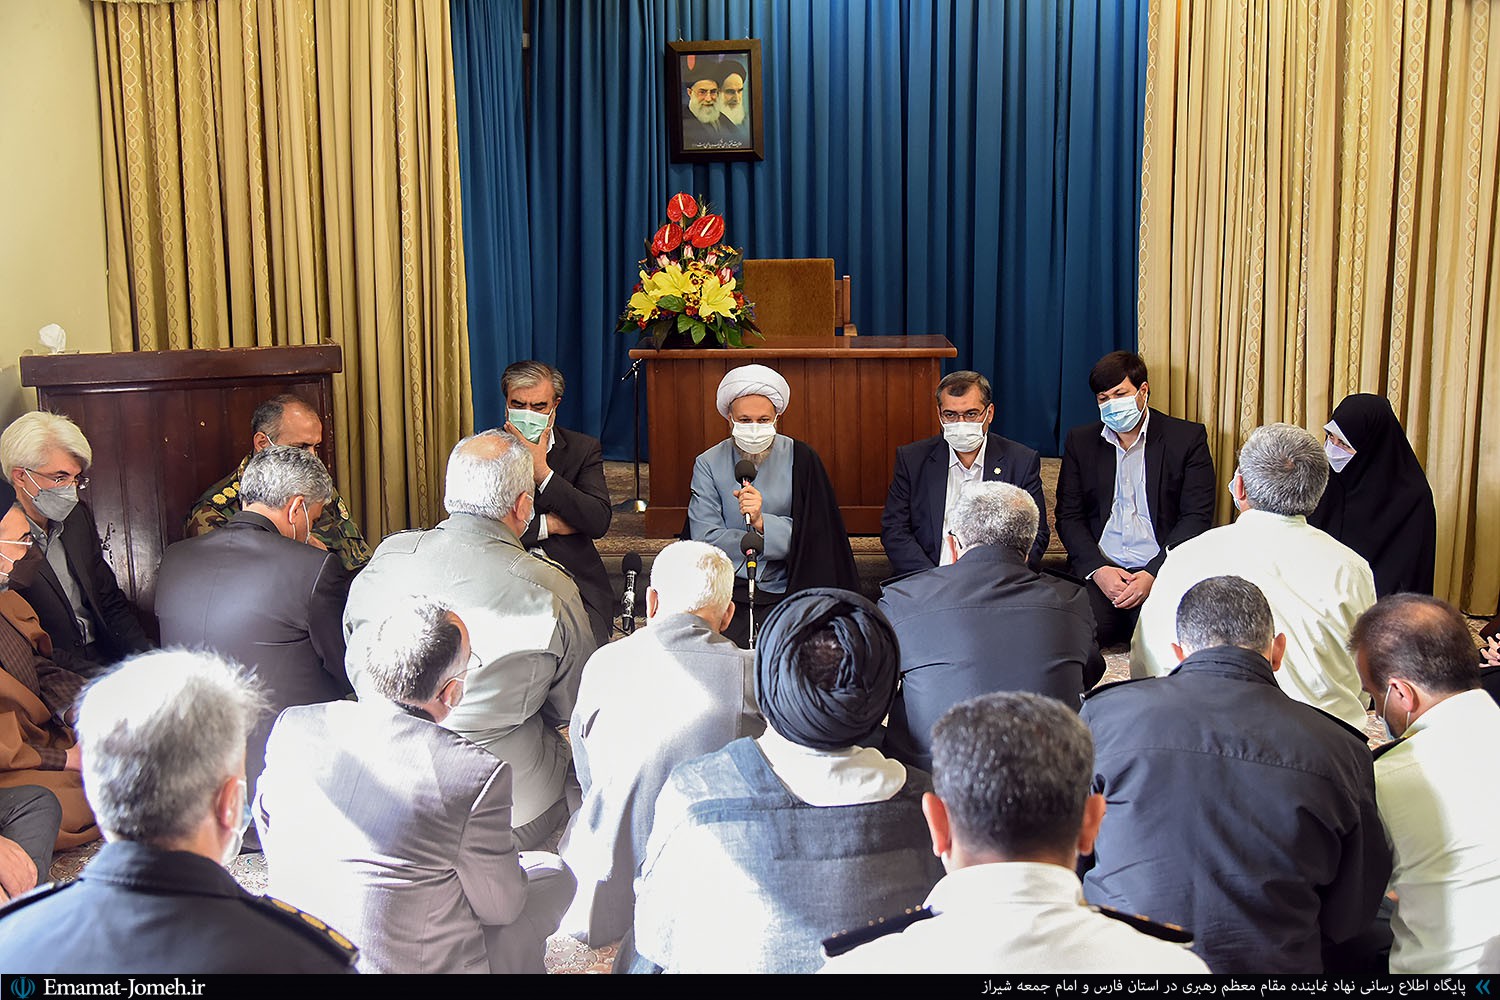 بیانات در دیدار نوروزی با برخی مسئولین استان و شهر شیراز